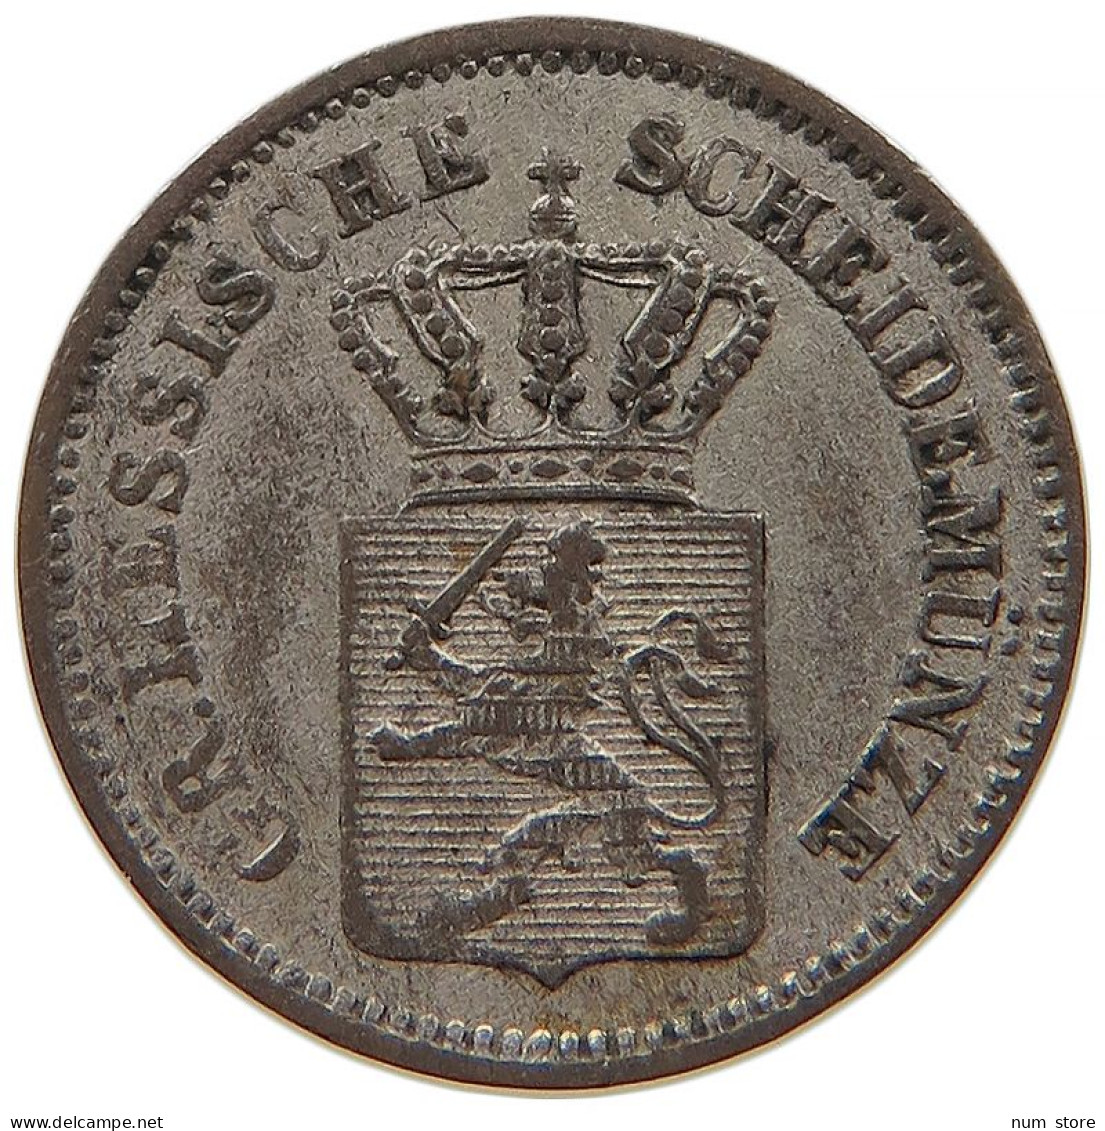 GERMAN STATES 1 KREUZER 1867 HESSEN DARMSTADT Ludwig III. 1848-1877. #s091 0005 - Taler Et Doppeltaler